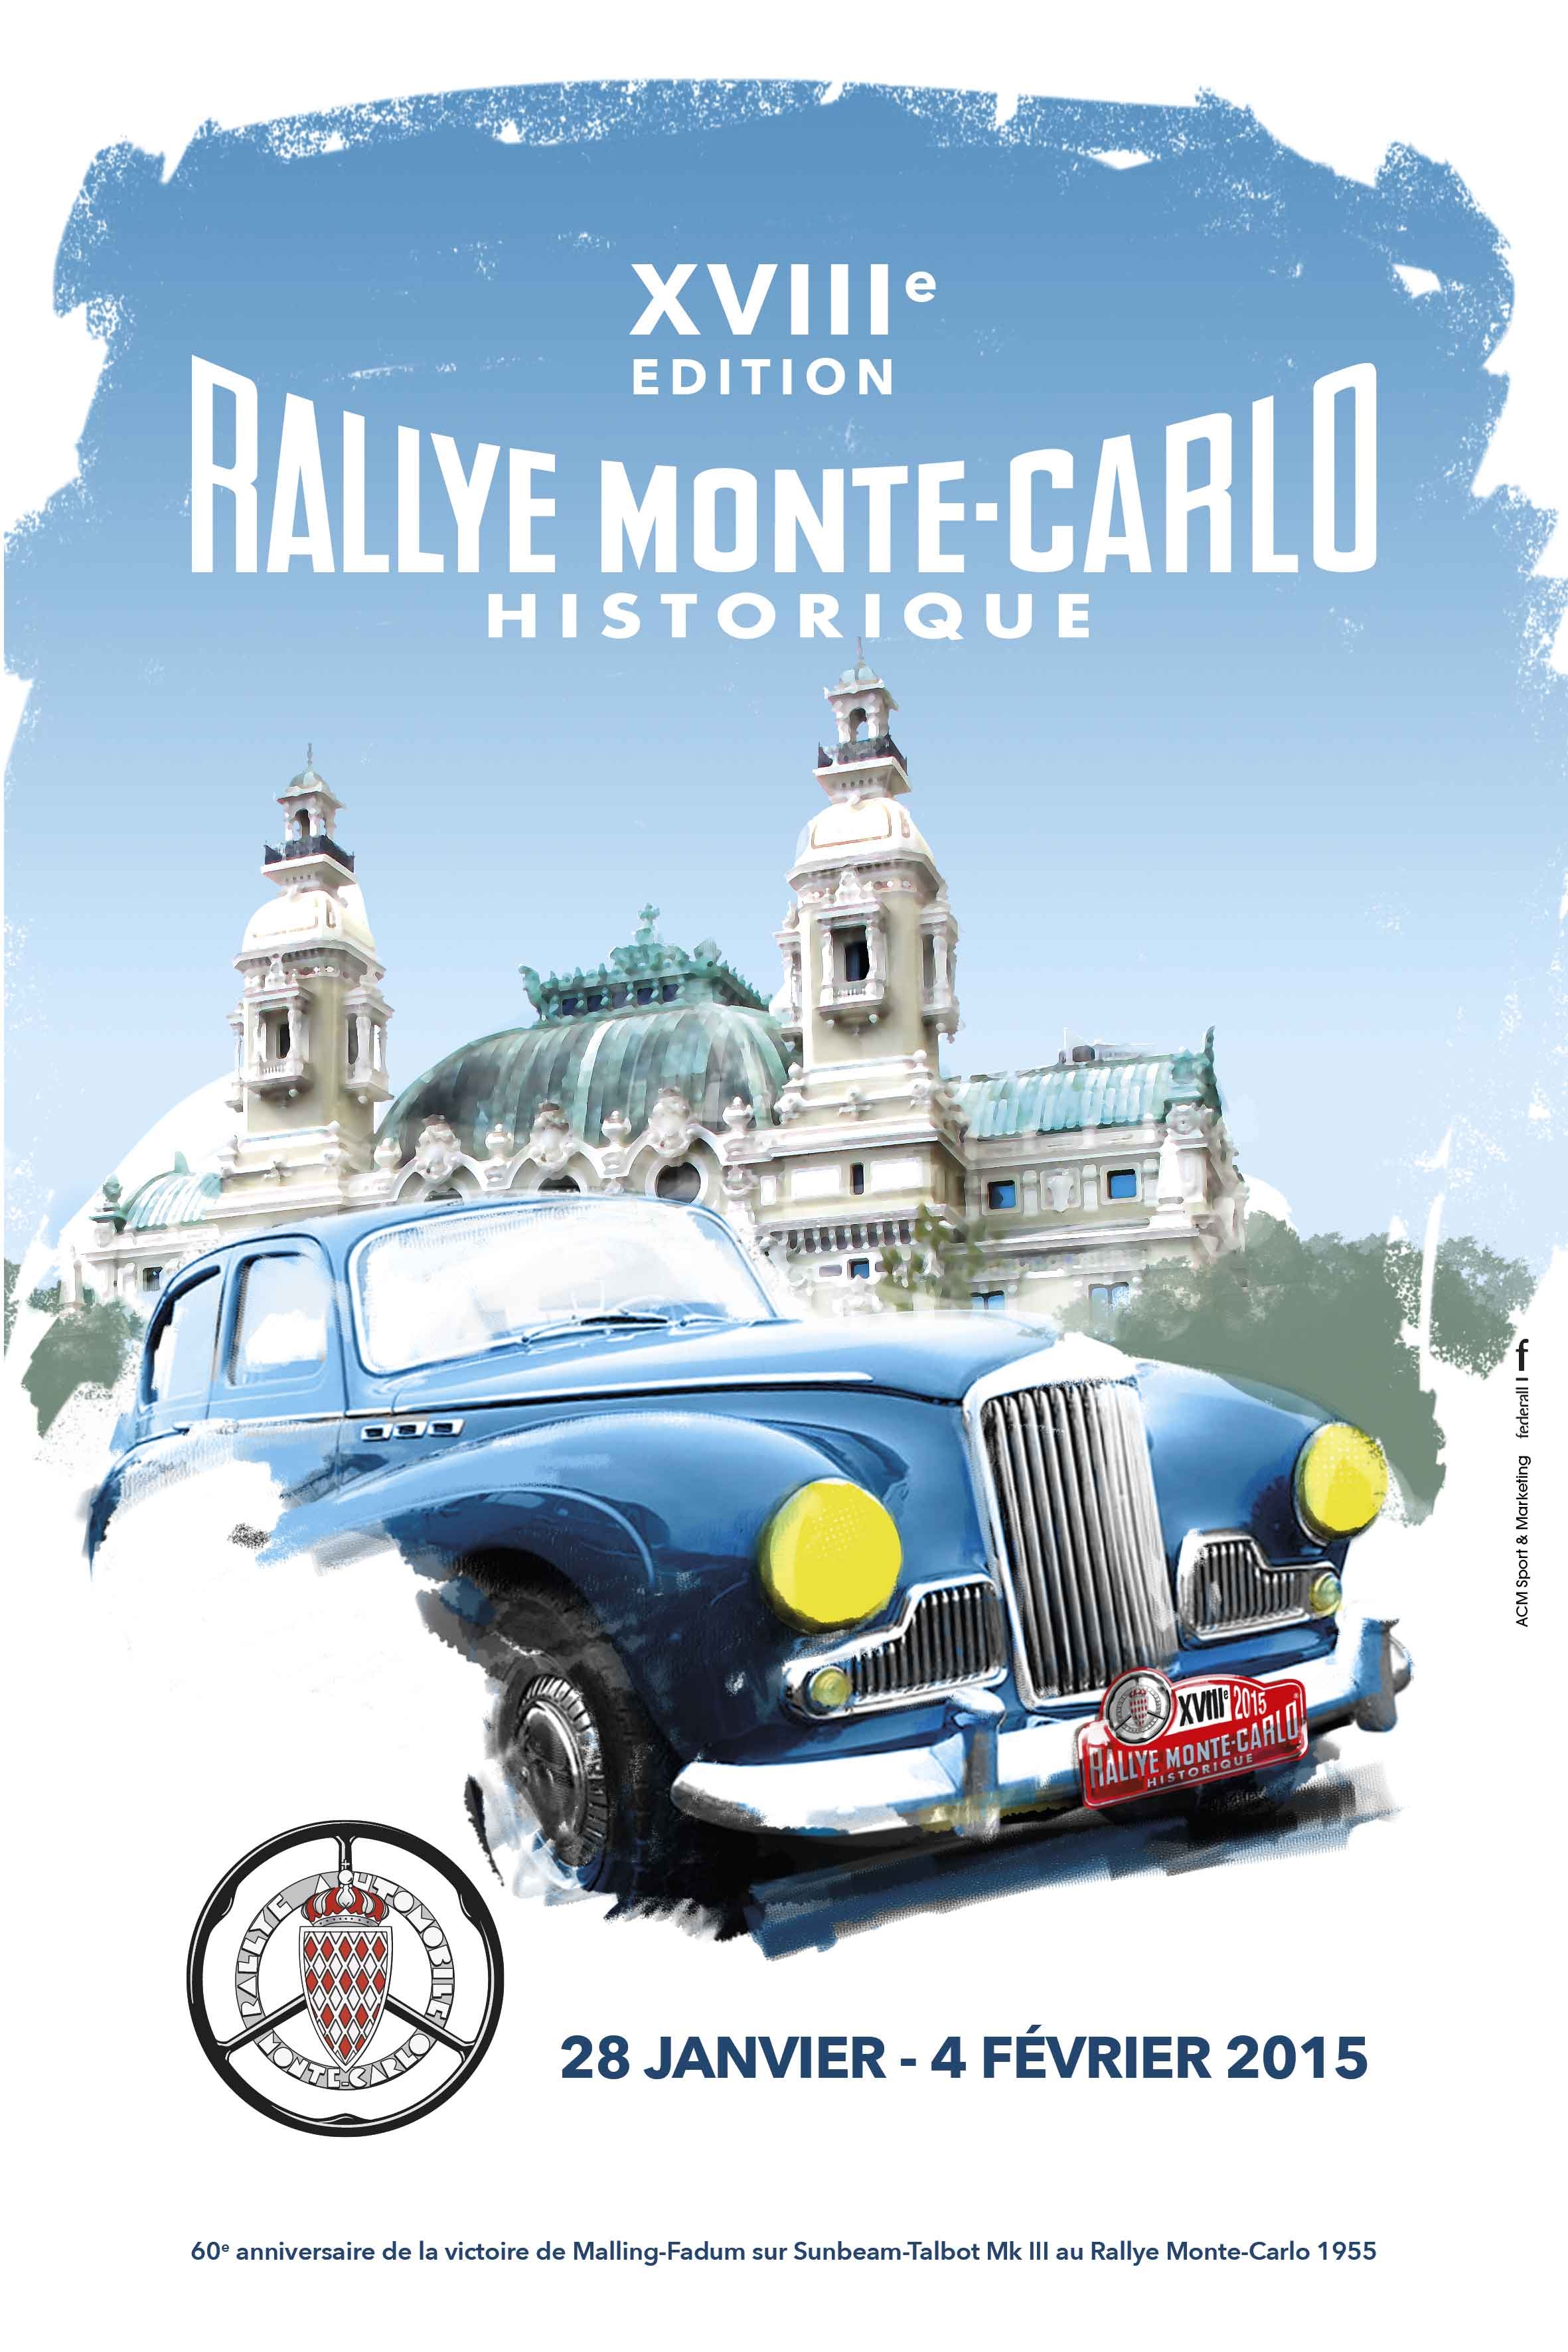 Rallye Montecarlo historique dal 28 gennaio al 4 febbraio 2015